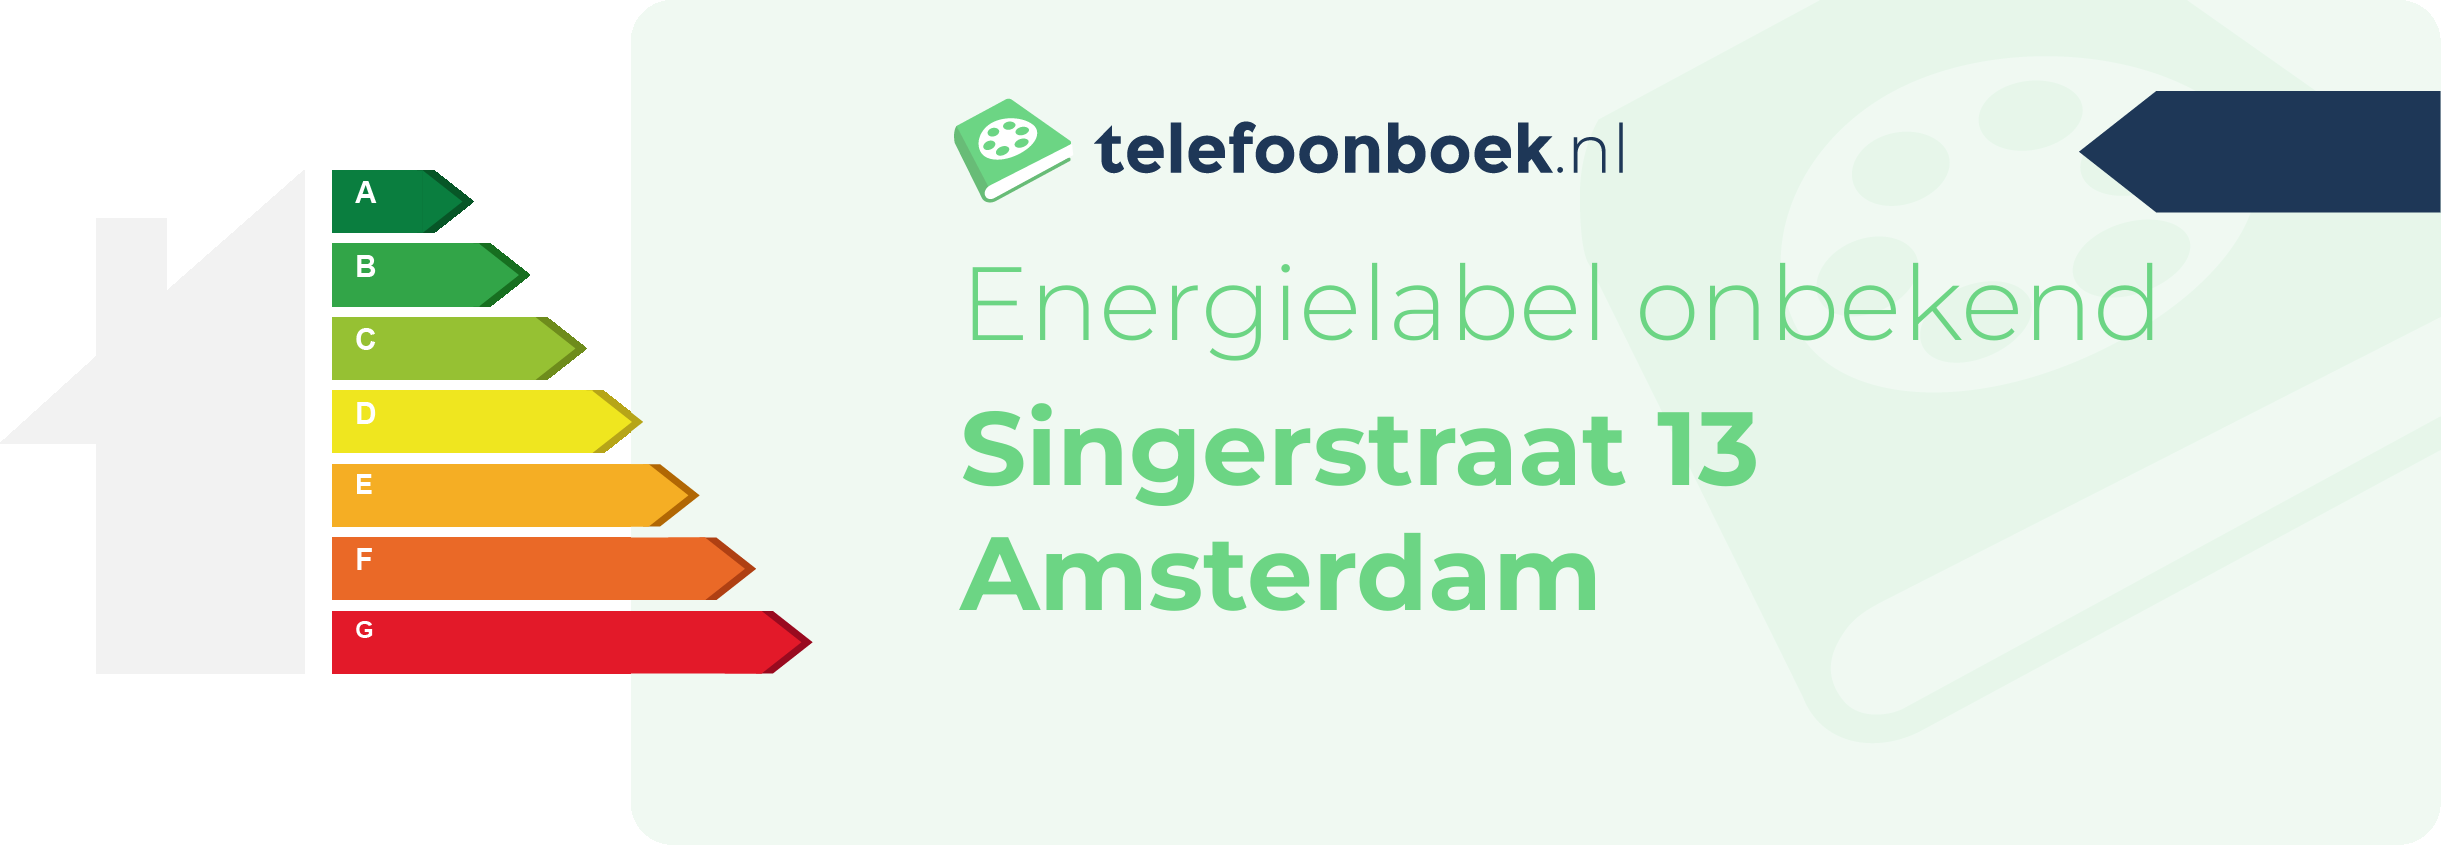 Energielabel Singerstraat 13 Amsterdam